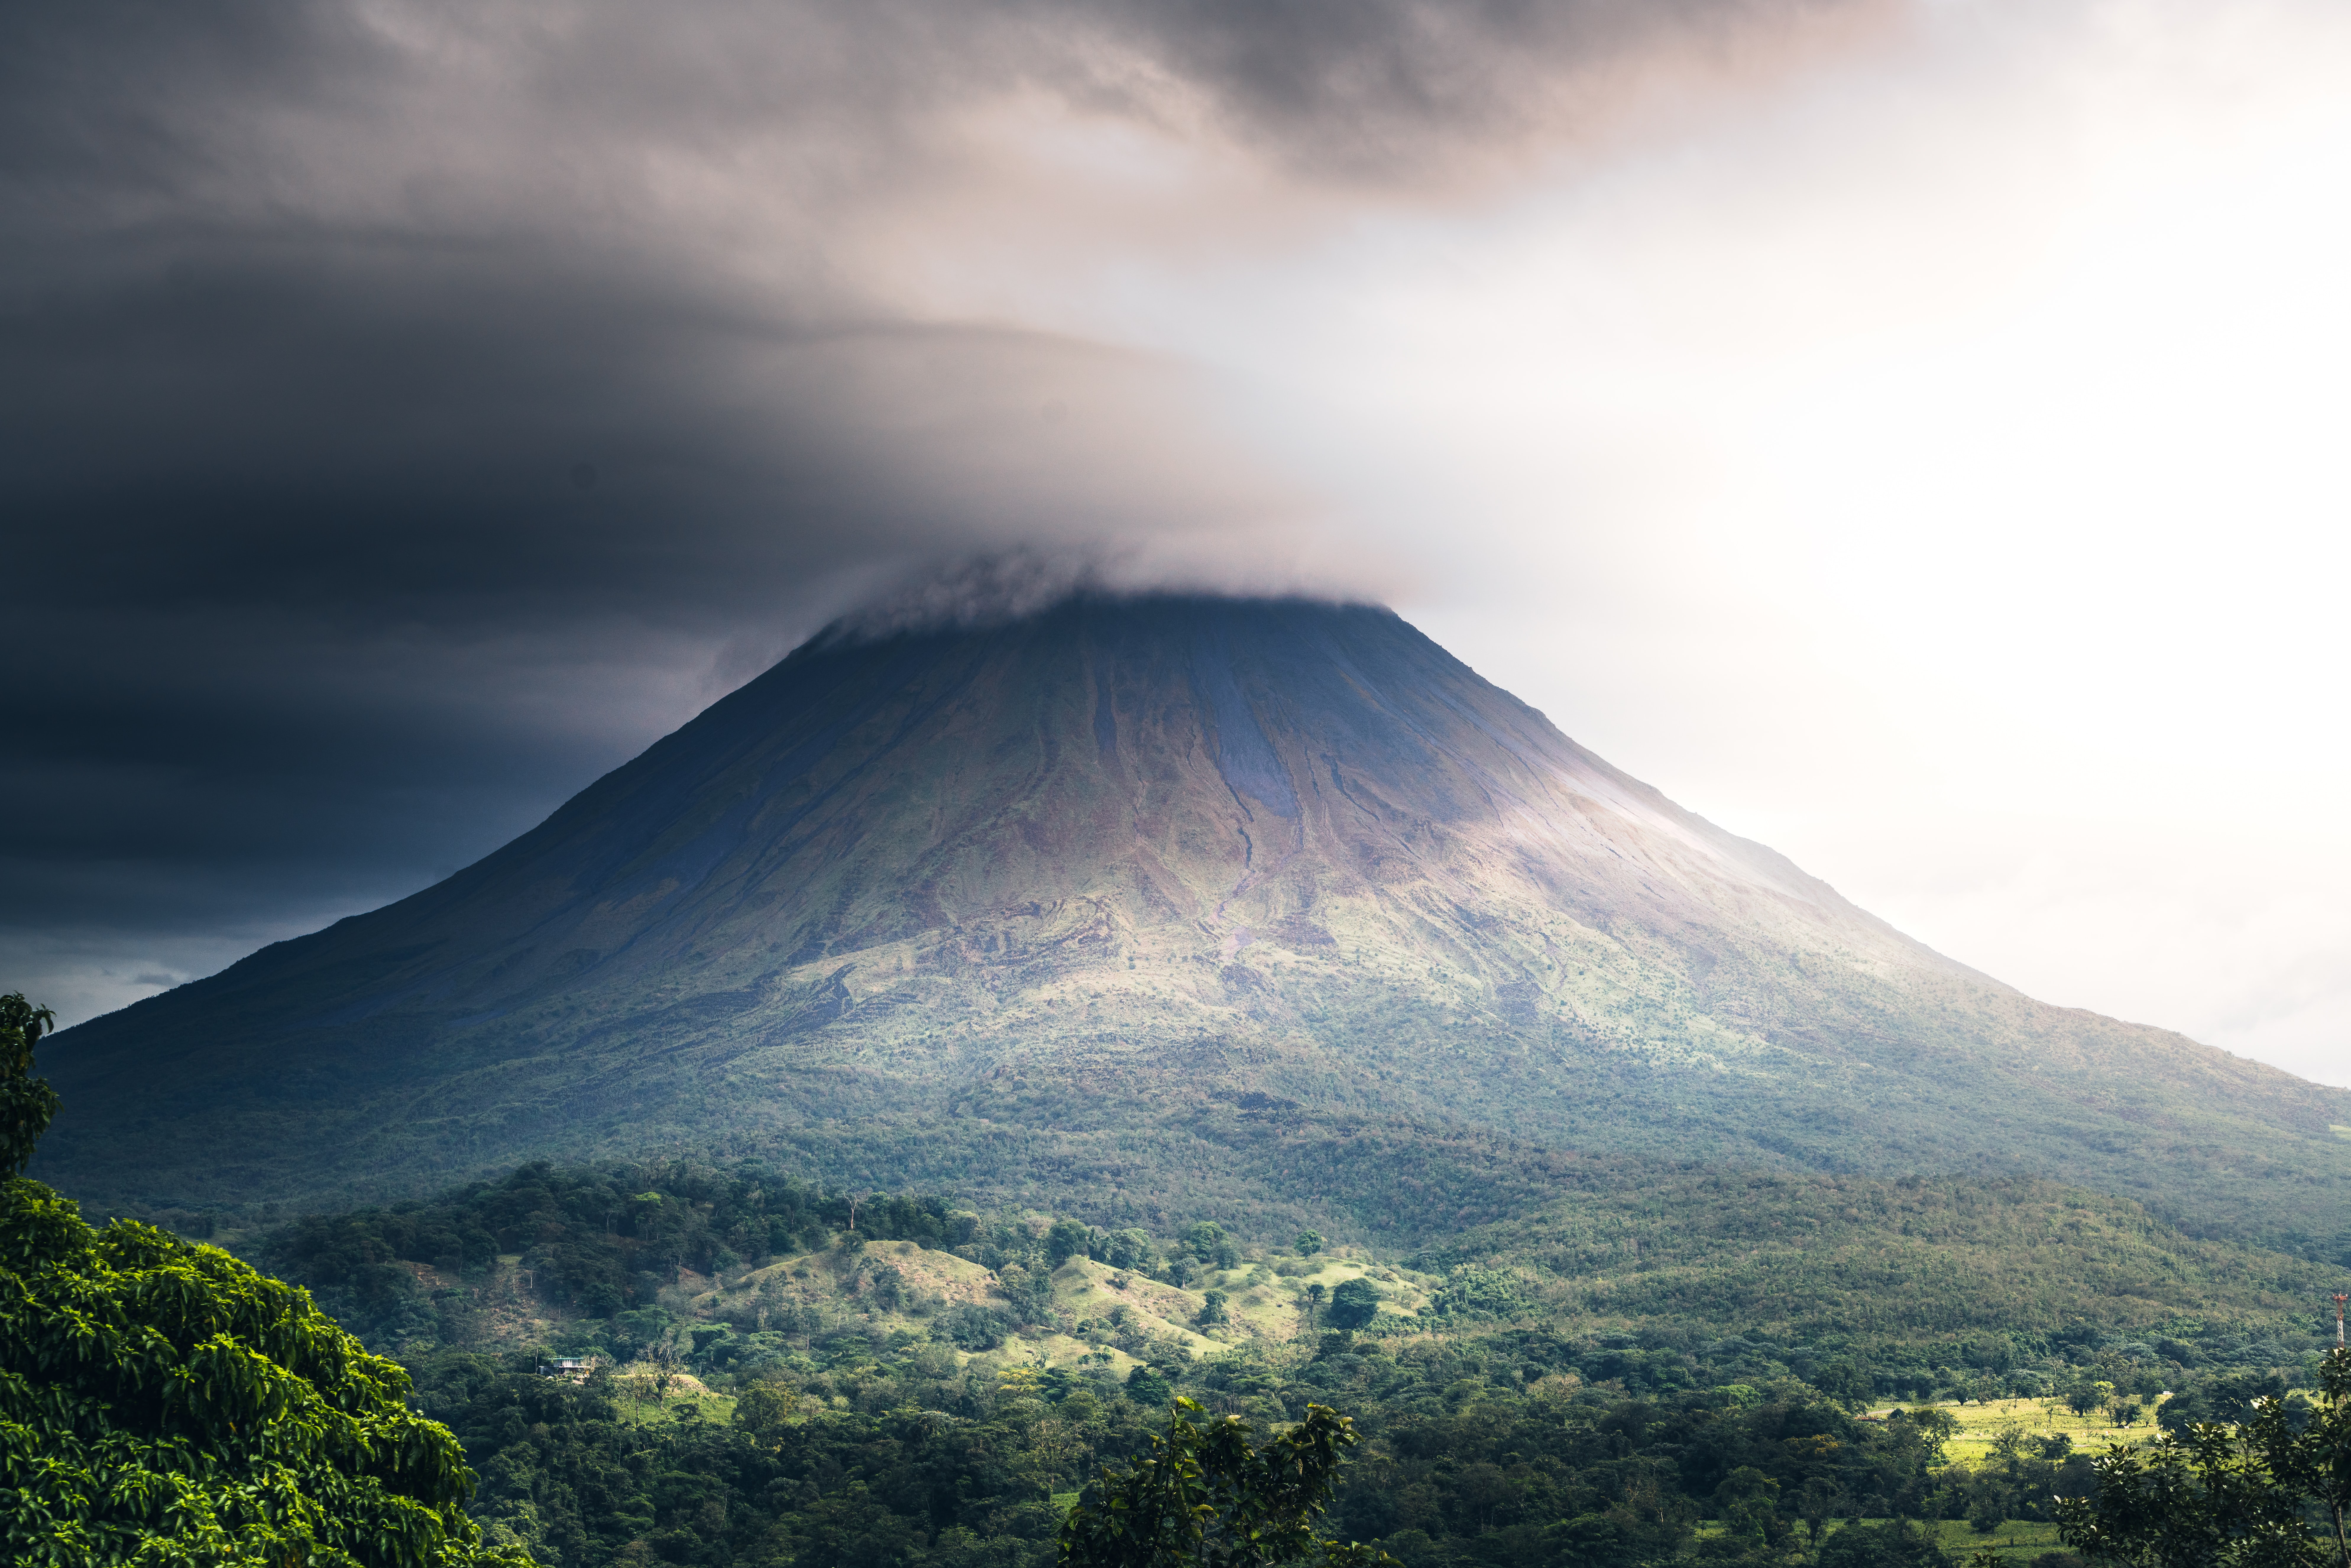 Fondos de Pantalla Datos Curiosos de Costa Rica, Volcán Arenal, Viaje,  Aventura, Viajar Sola, Imágenes y Fotos Gratis